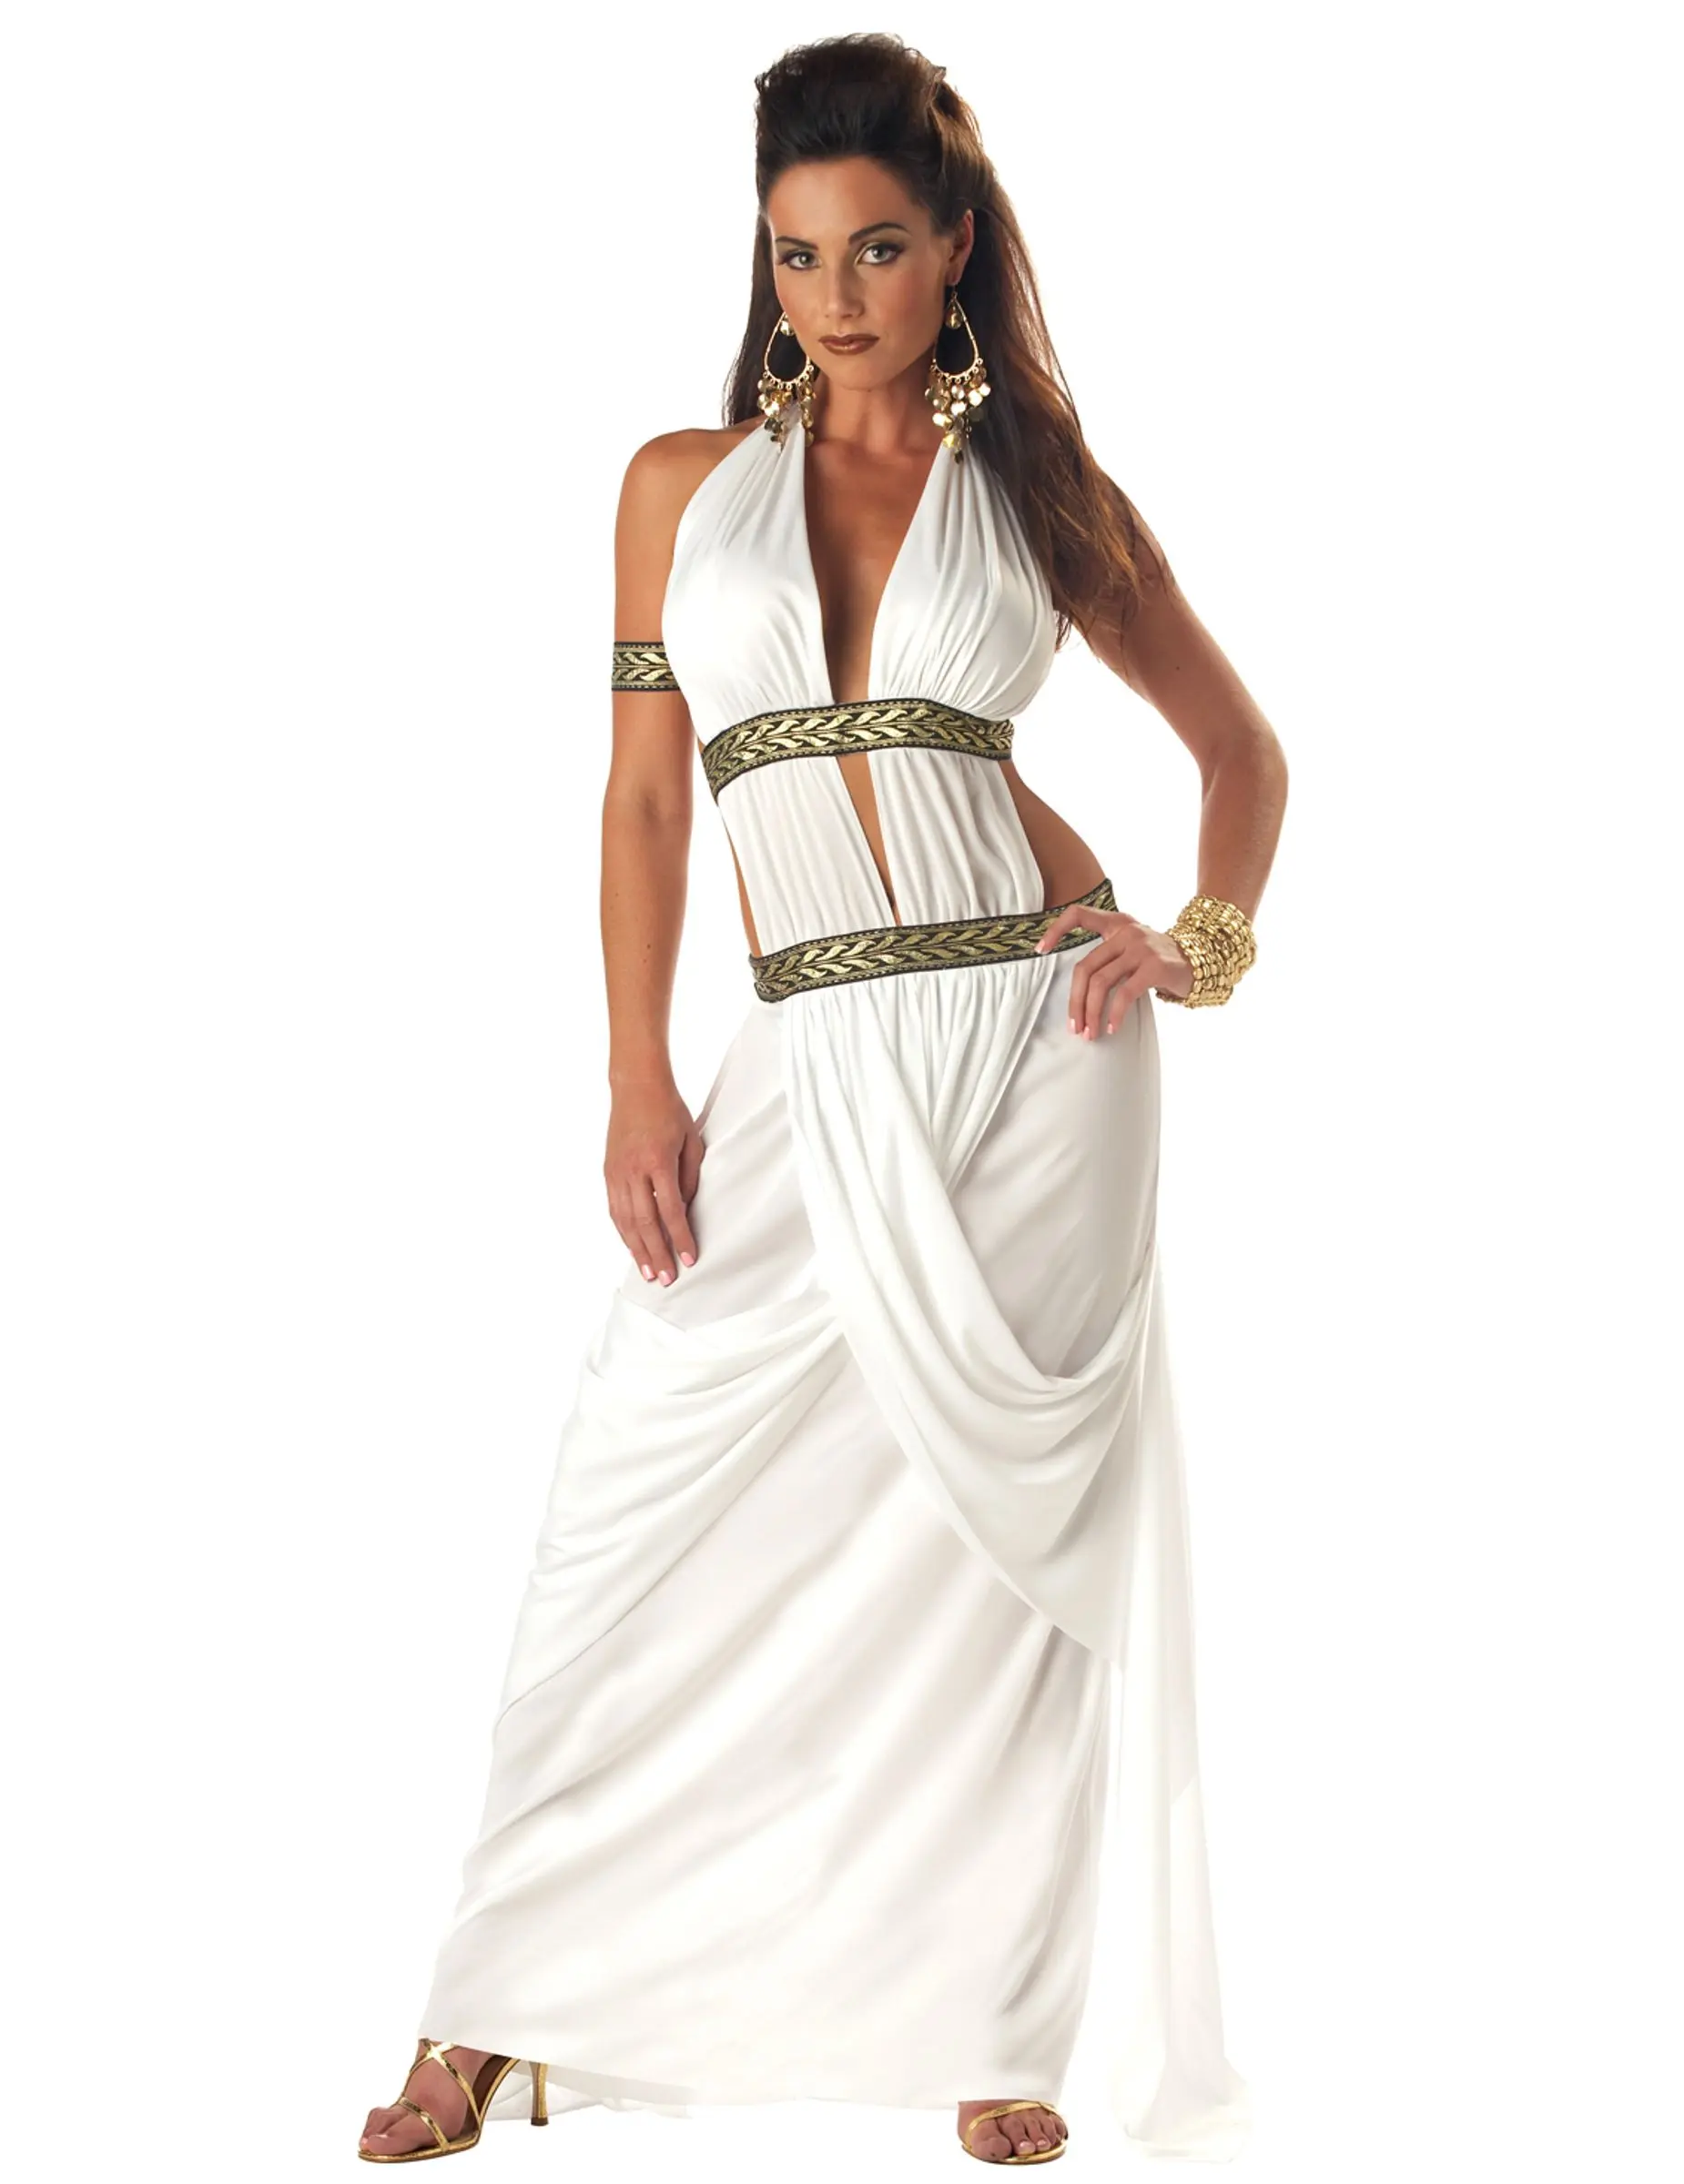 Vestimenta de las mujeres espartanas: estilo y modestia